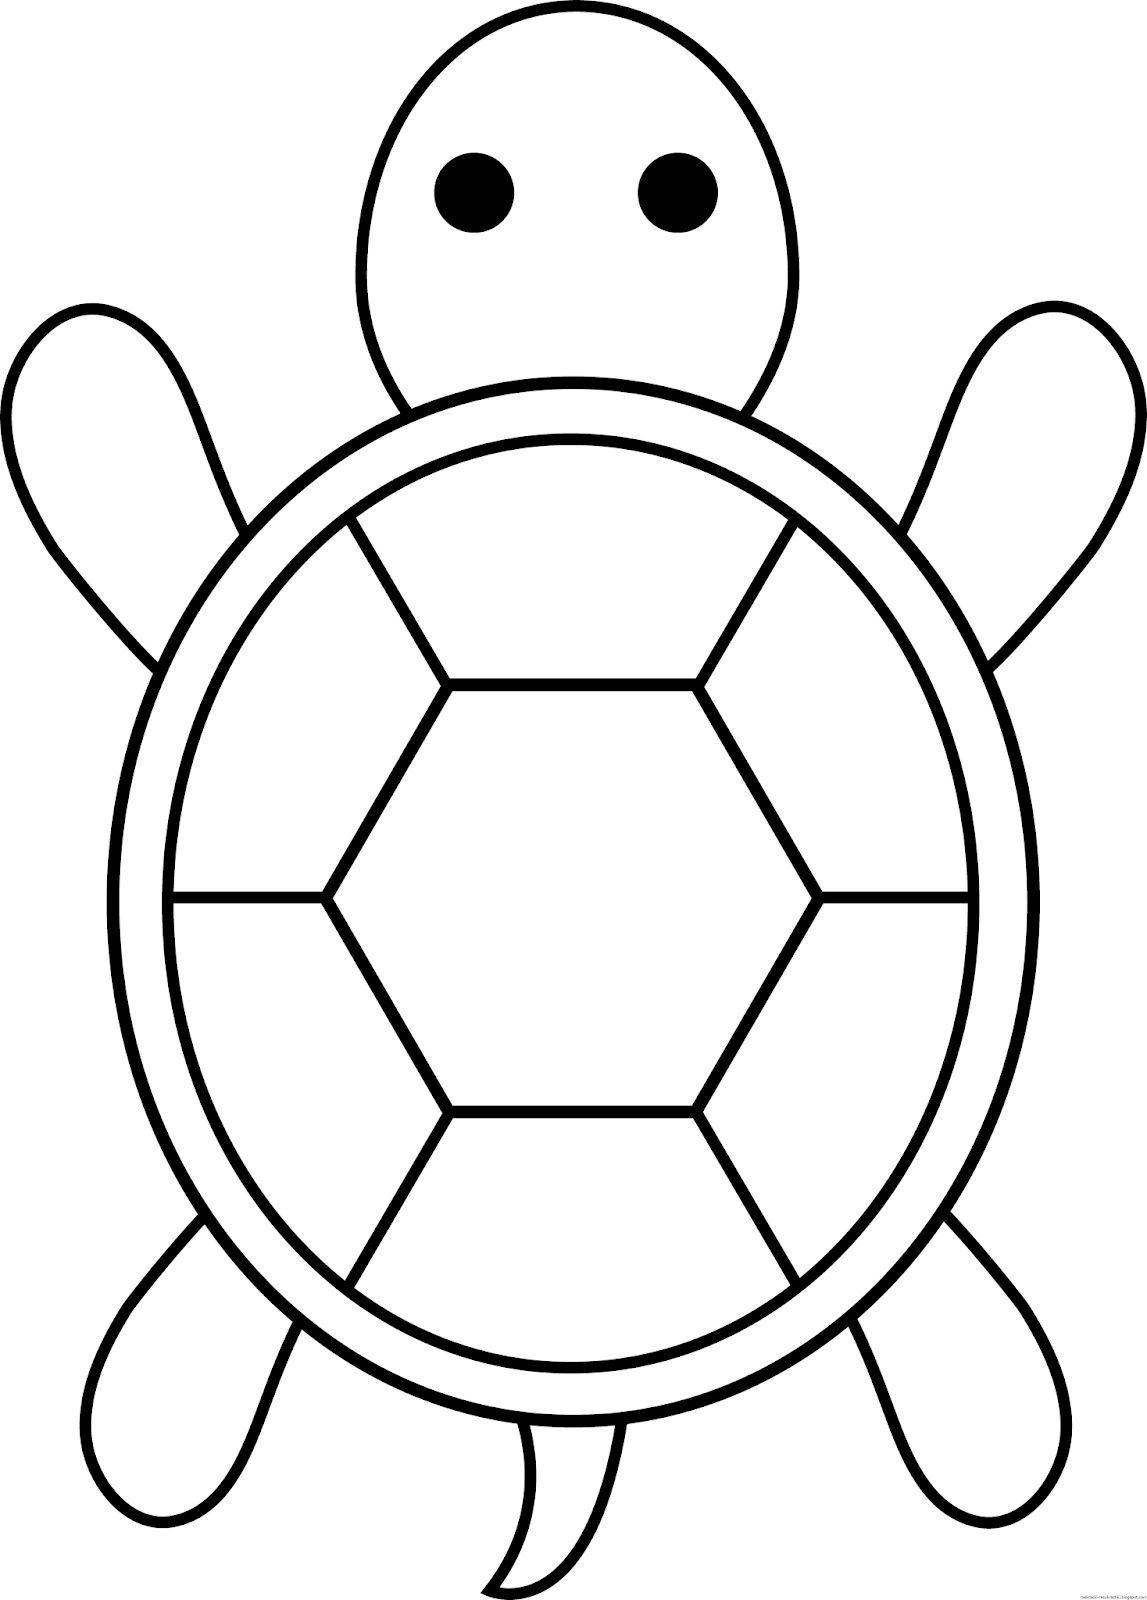 Раскраска черепашка. Раскраски черепах. Черепаха раскраска для малышей. Трафареты детские для рисования. Рисование картинки шаблоны